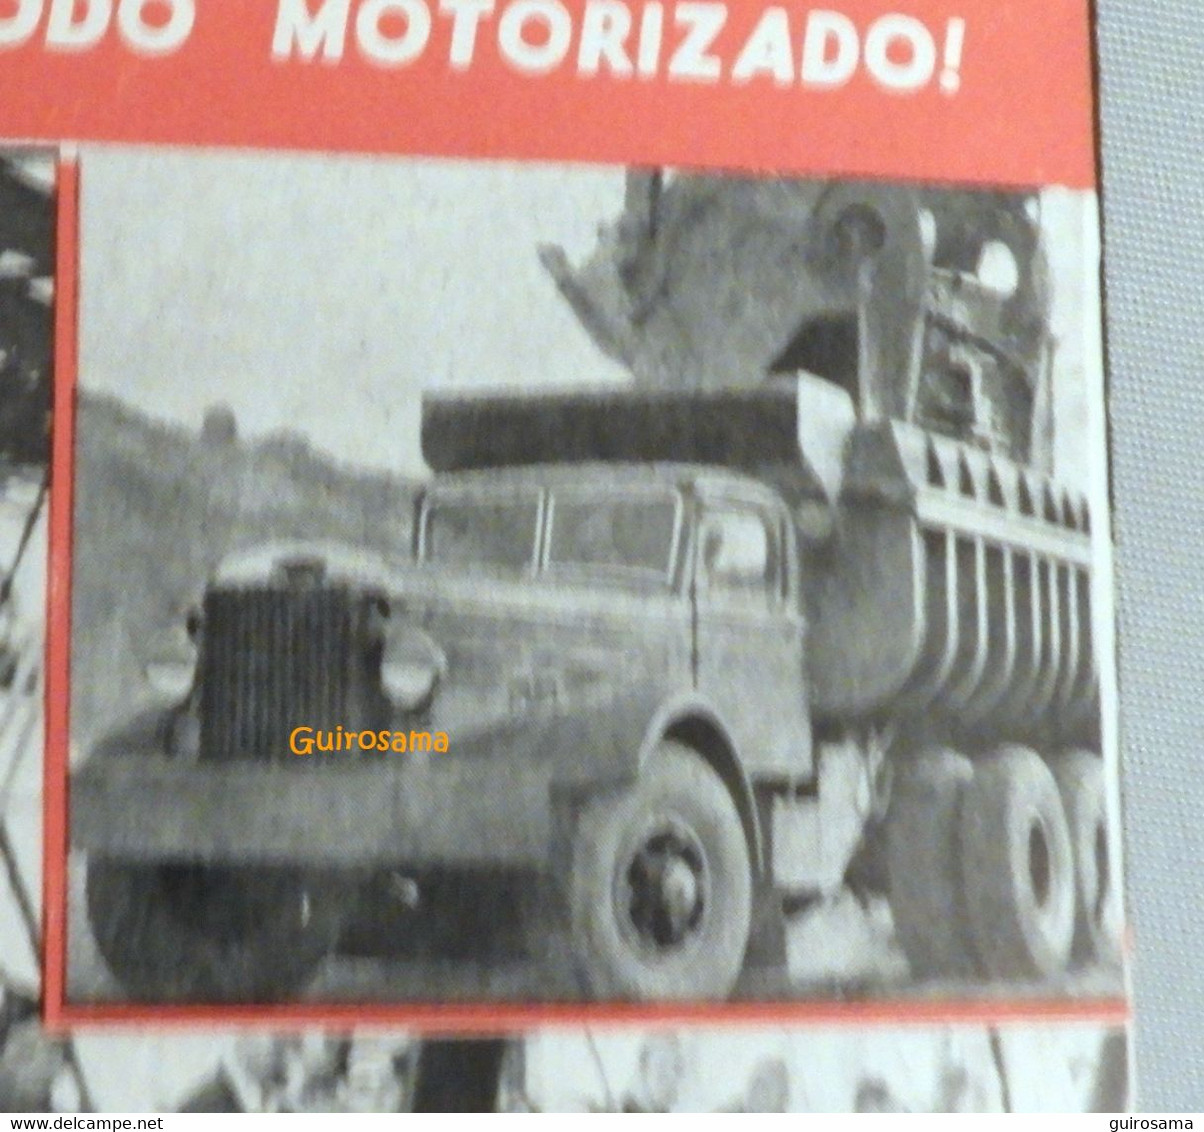 Manual de automobiles de Arias Paz - El Motor - 1943 - bus, tracteur, camion, char